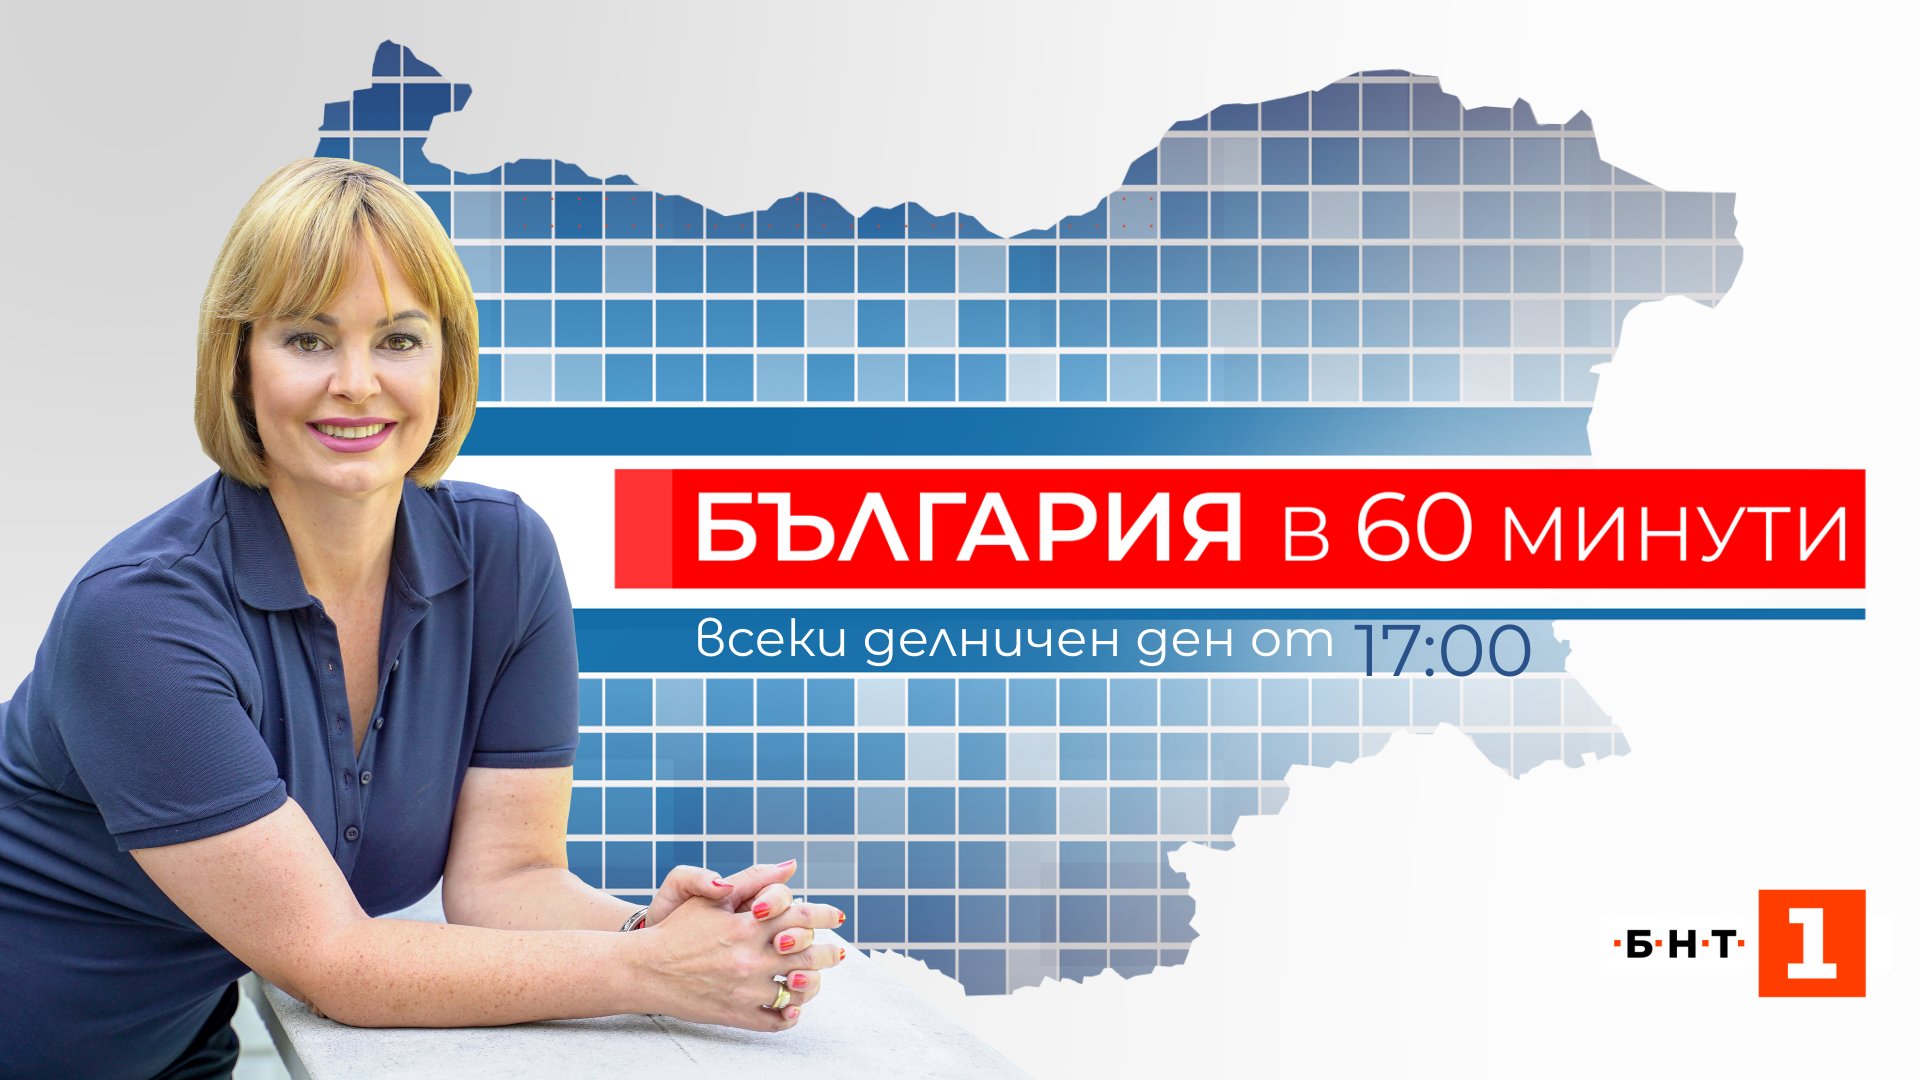 Популярната телевизионна водеща Мариана Векилска се завръща на екран с